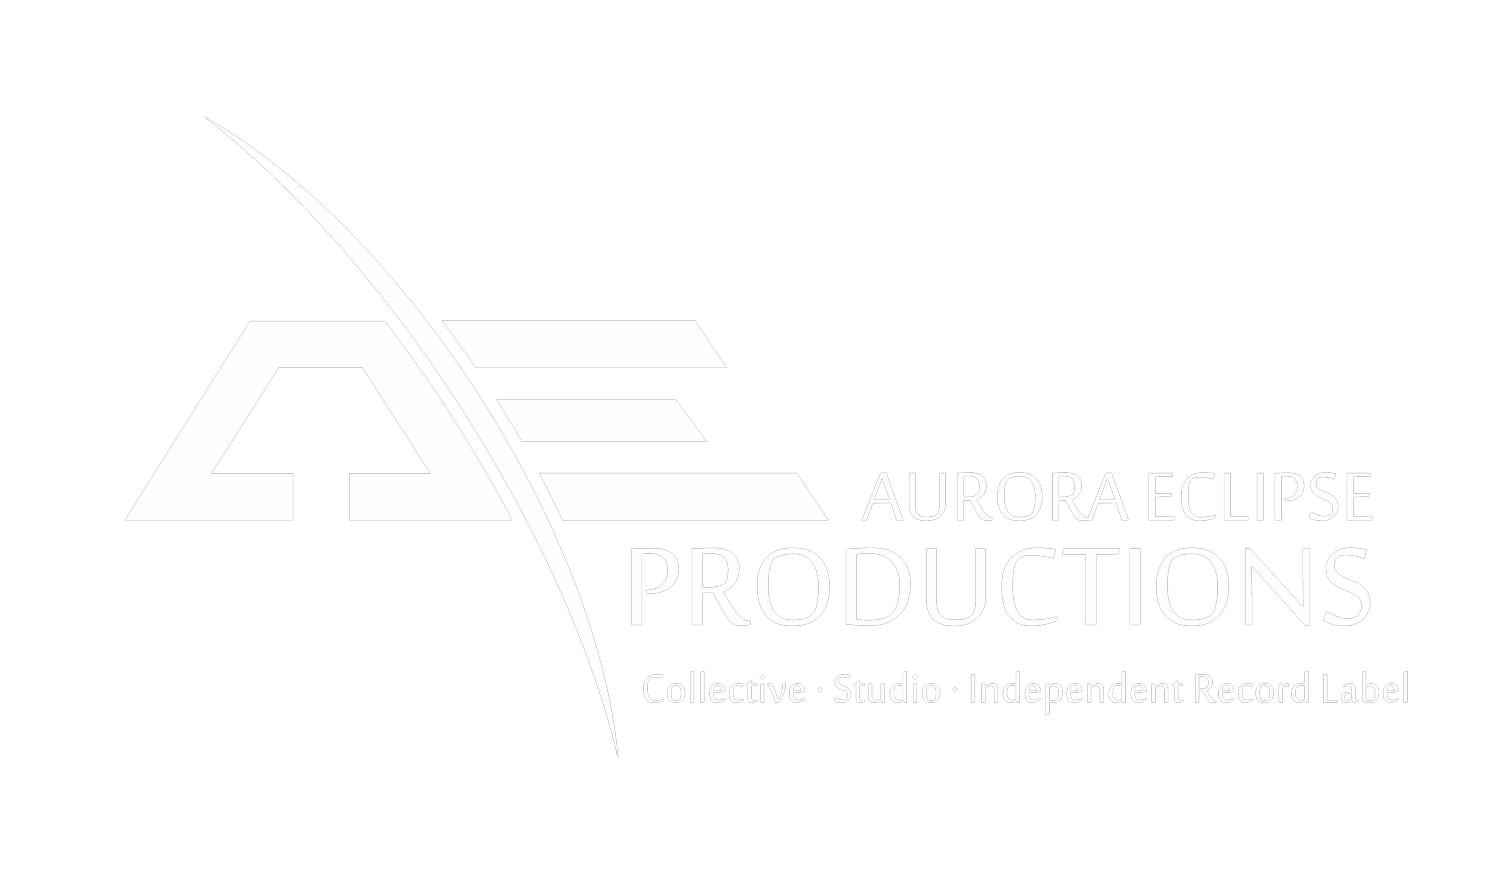 Aurora Eclipse Productions Ltd